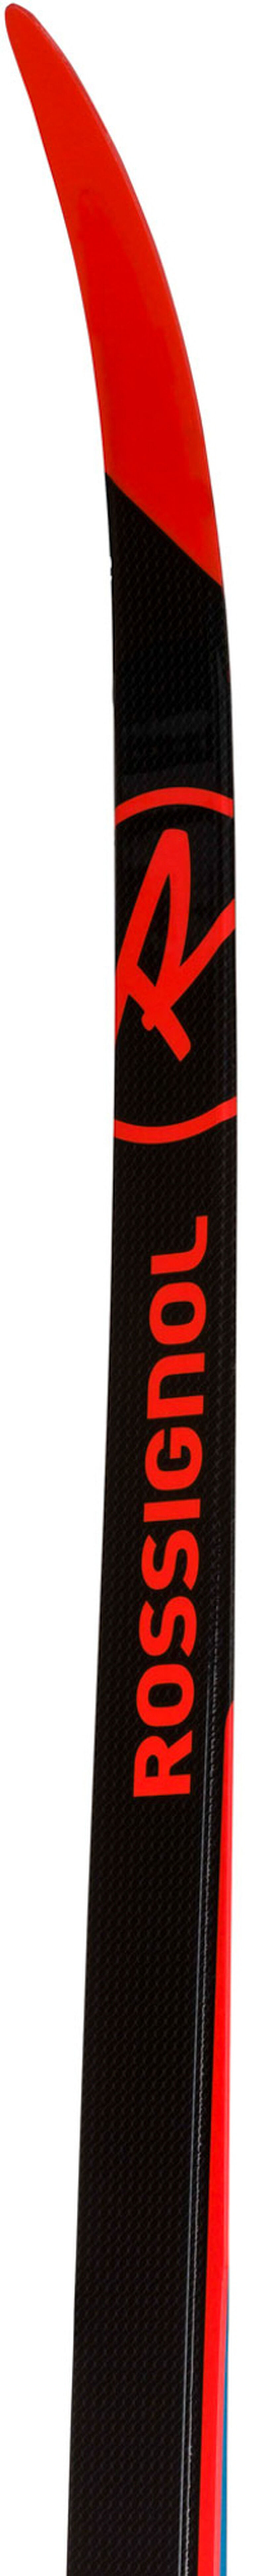 Skis de fond racing unisexe X-IUM CLASSIC PREMIUM C2-STIFF